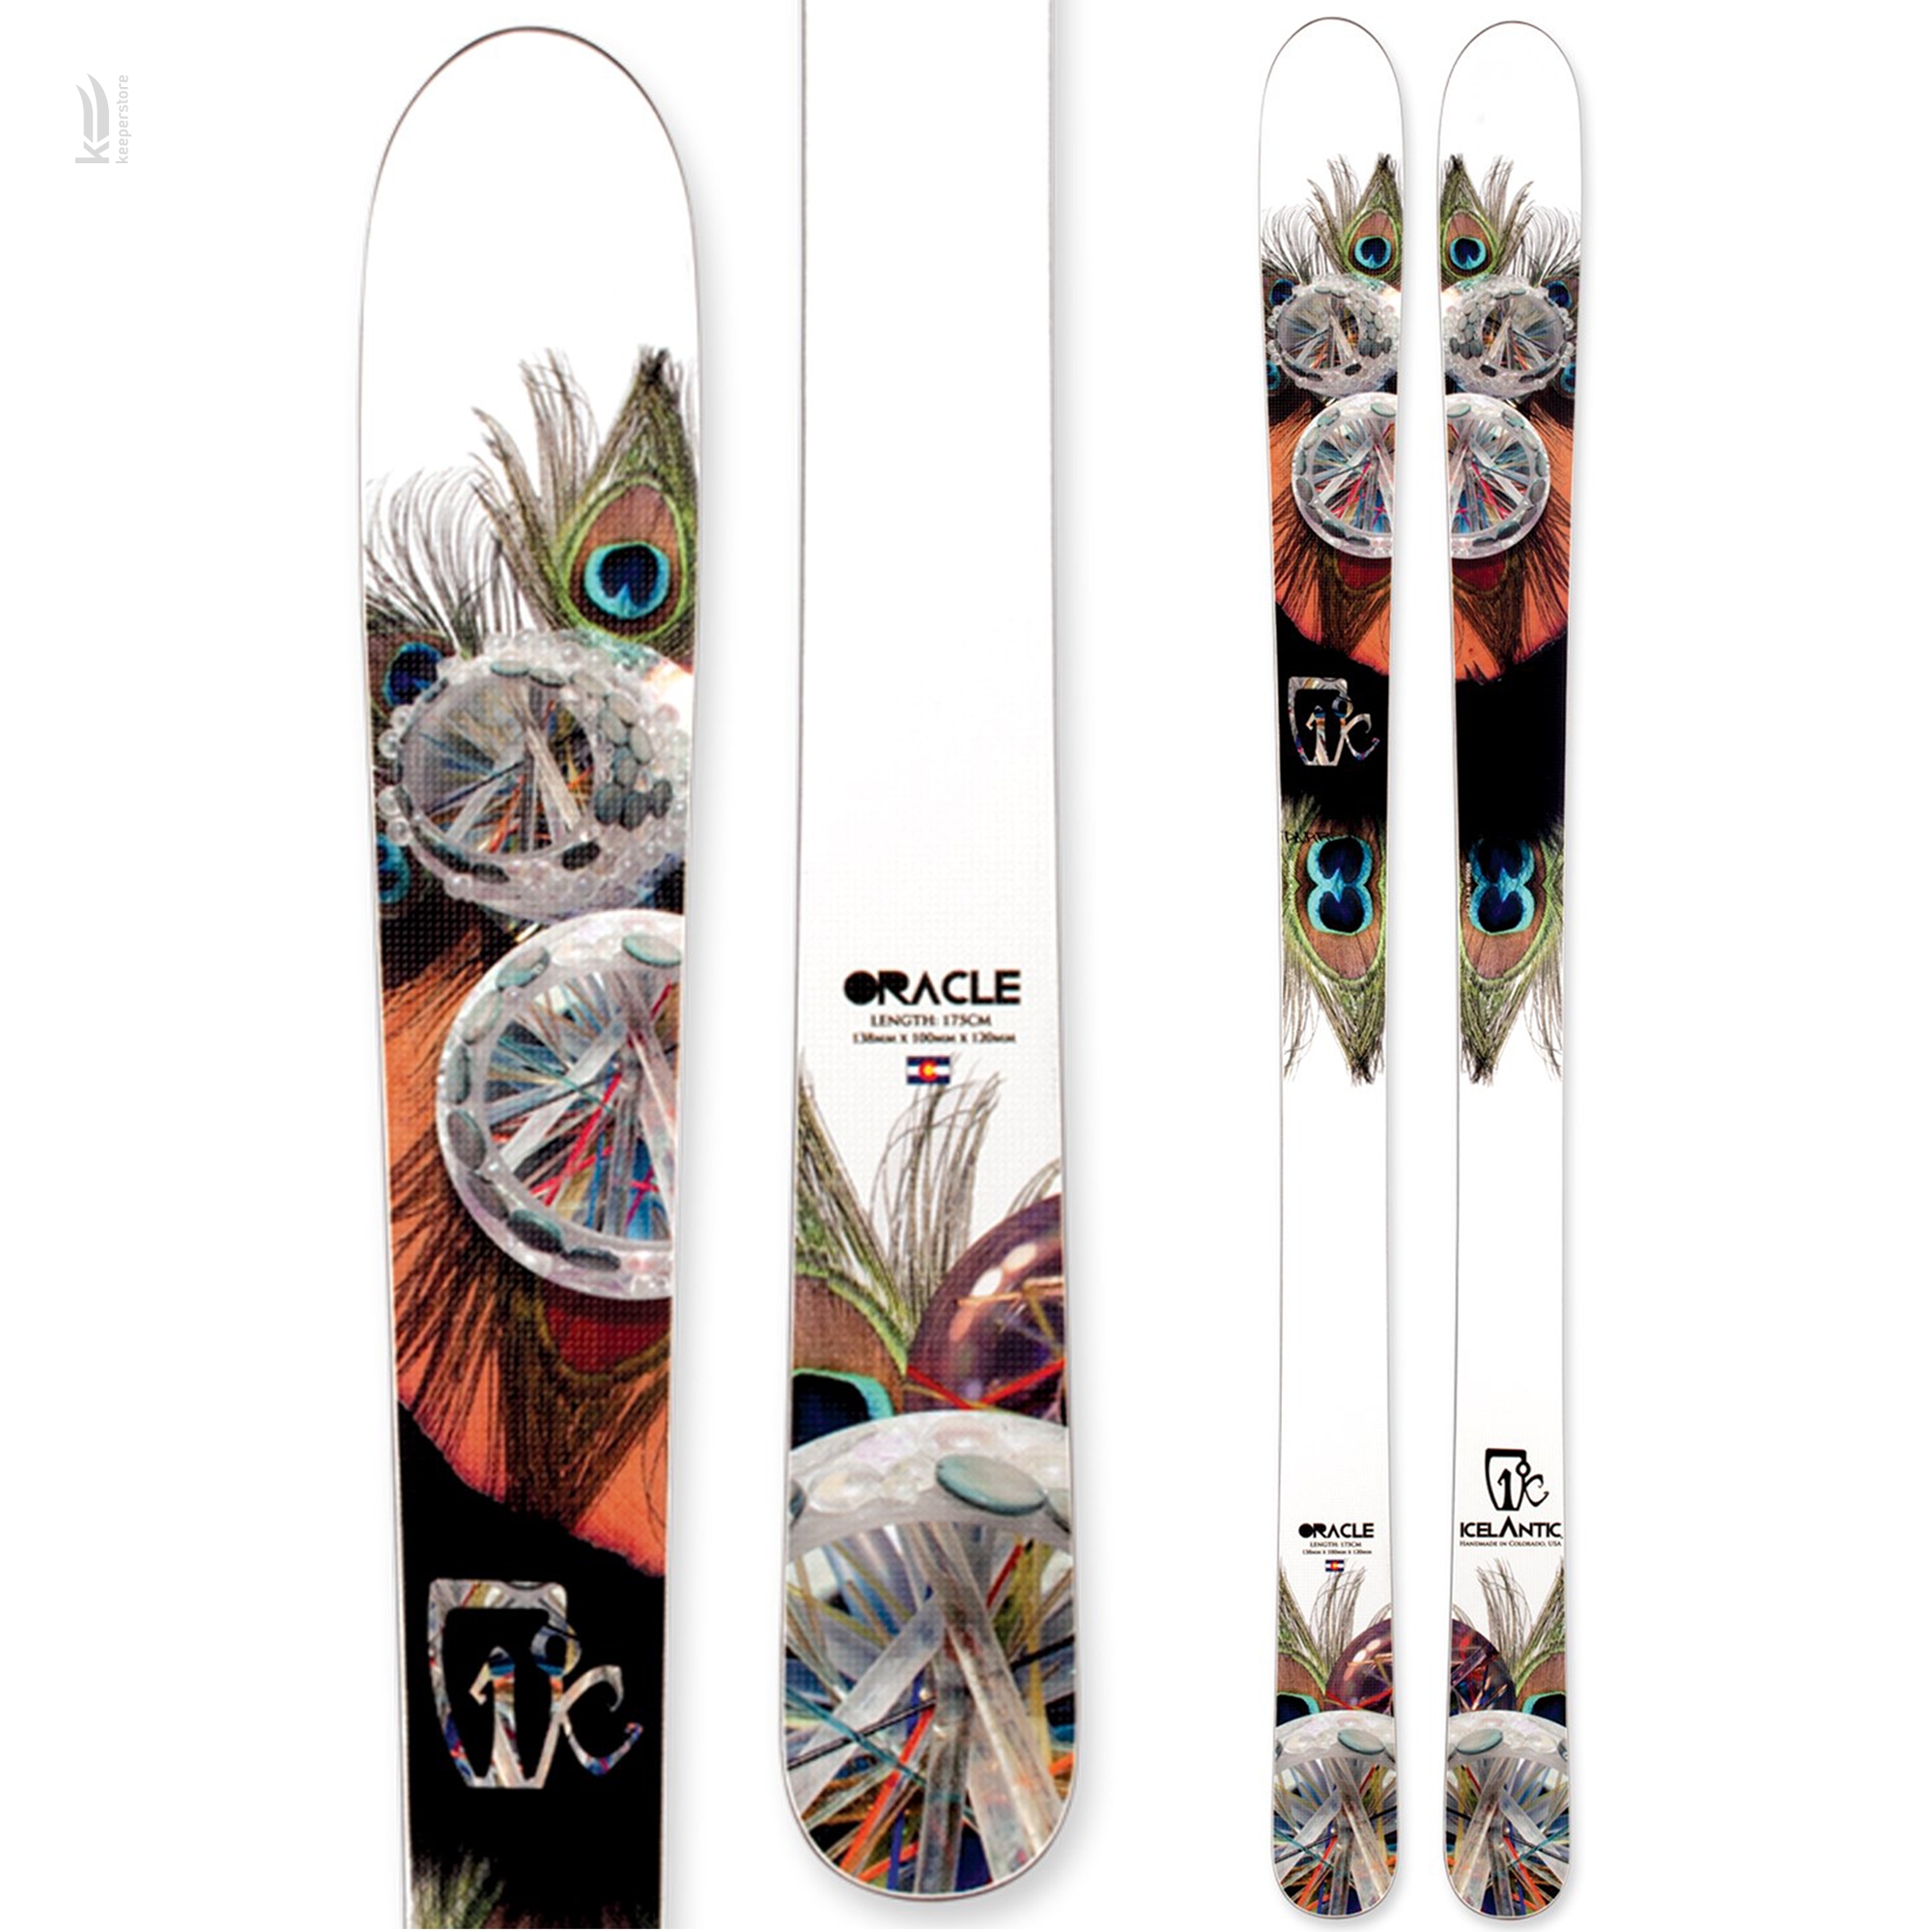 Лыжи для фрирайда Icelantic Oracle 100 2013/2014 175cm